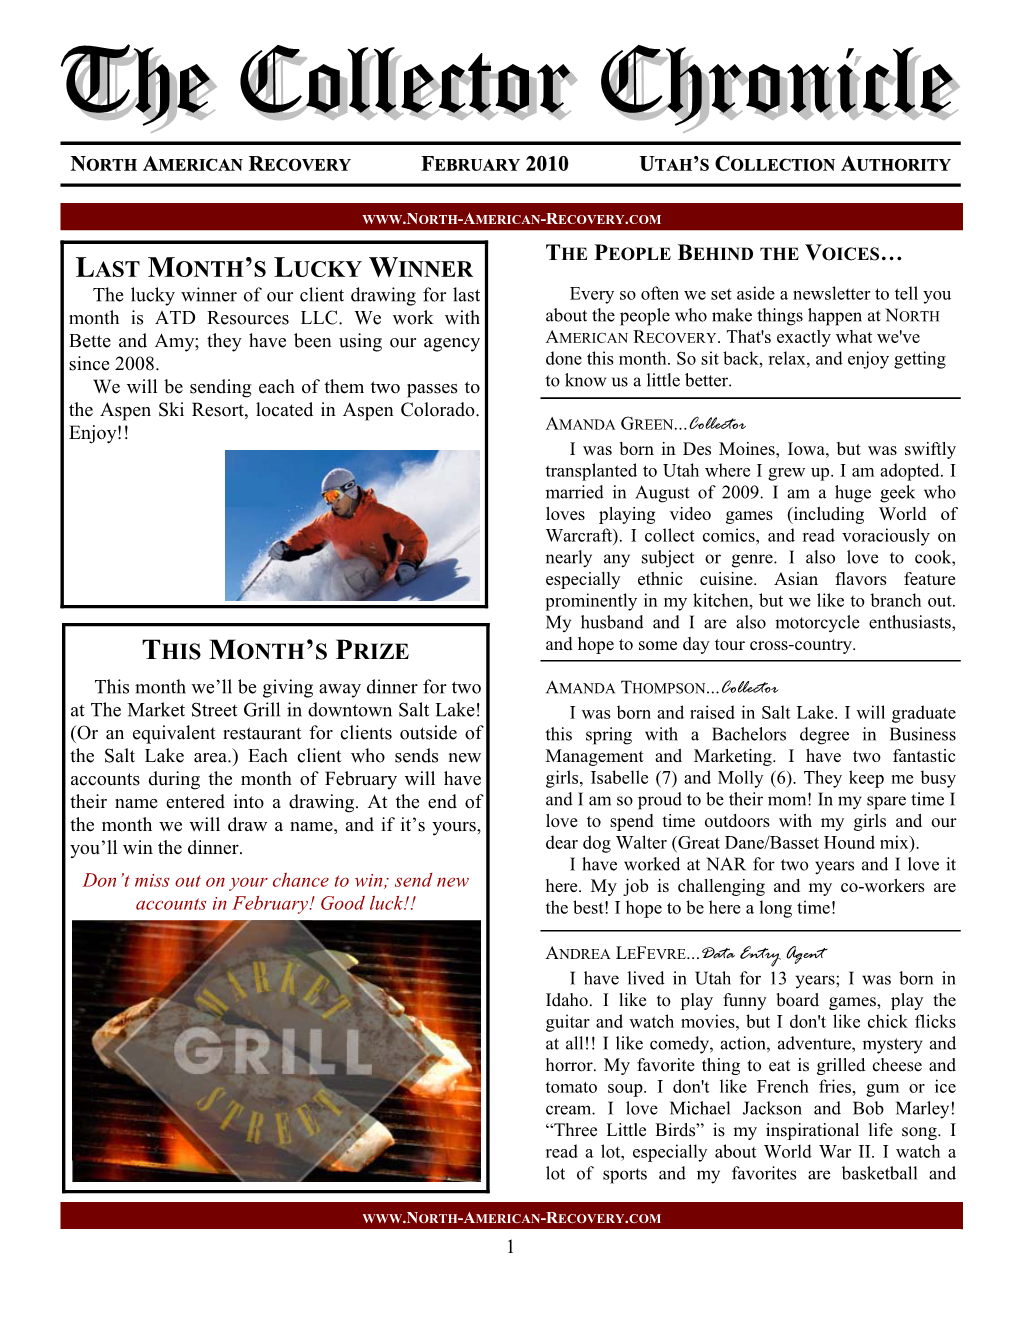 February 2010 Newsletter